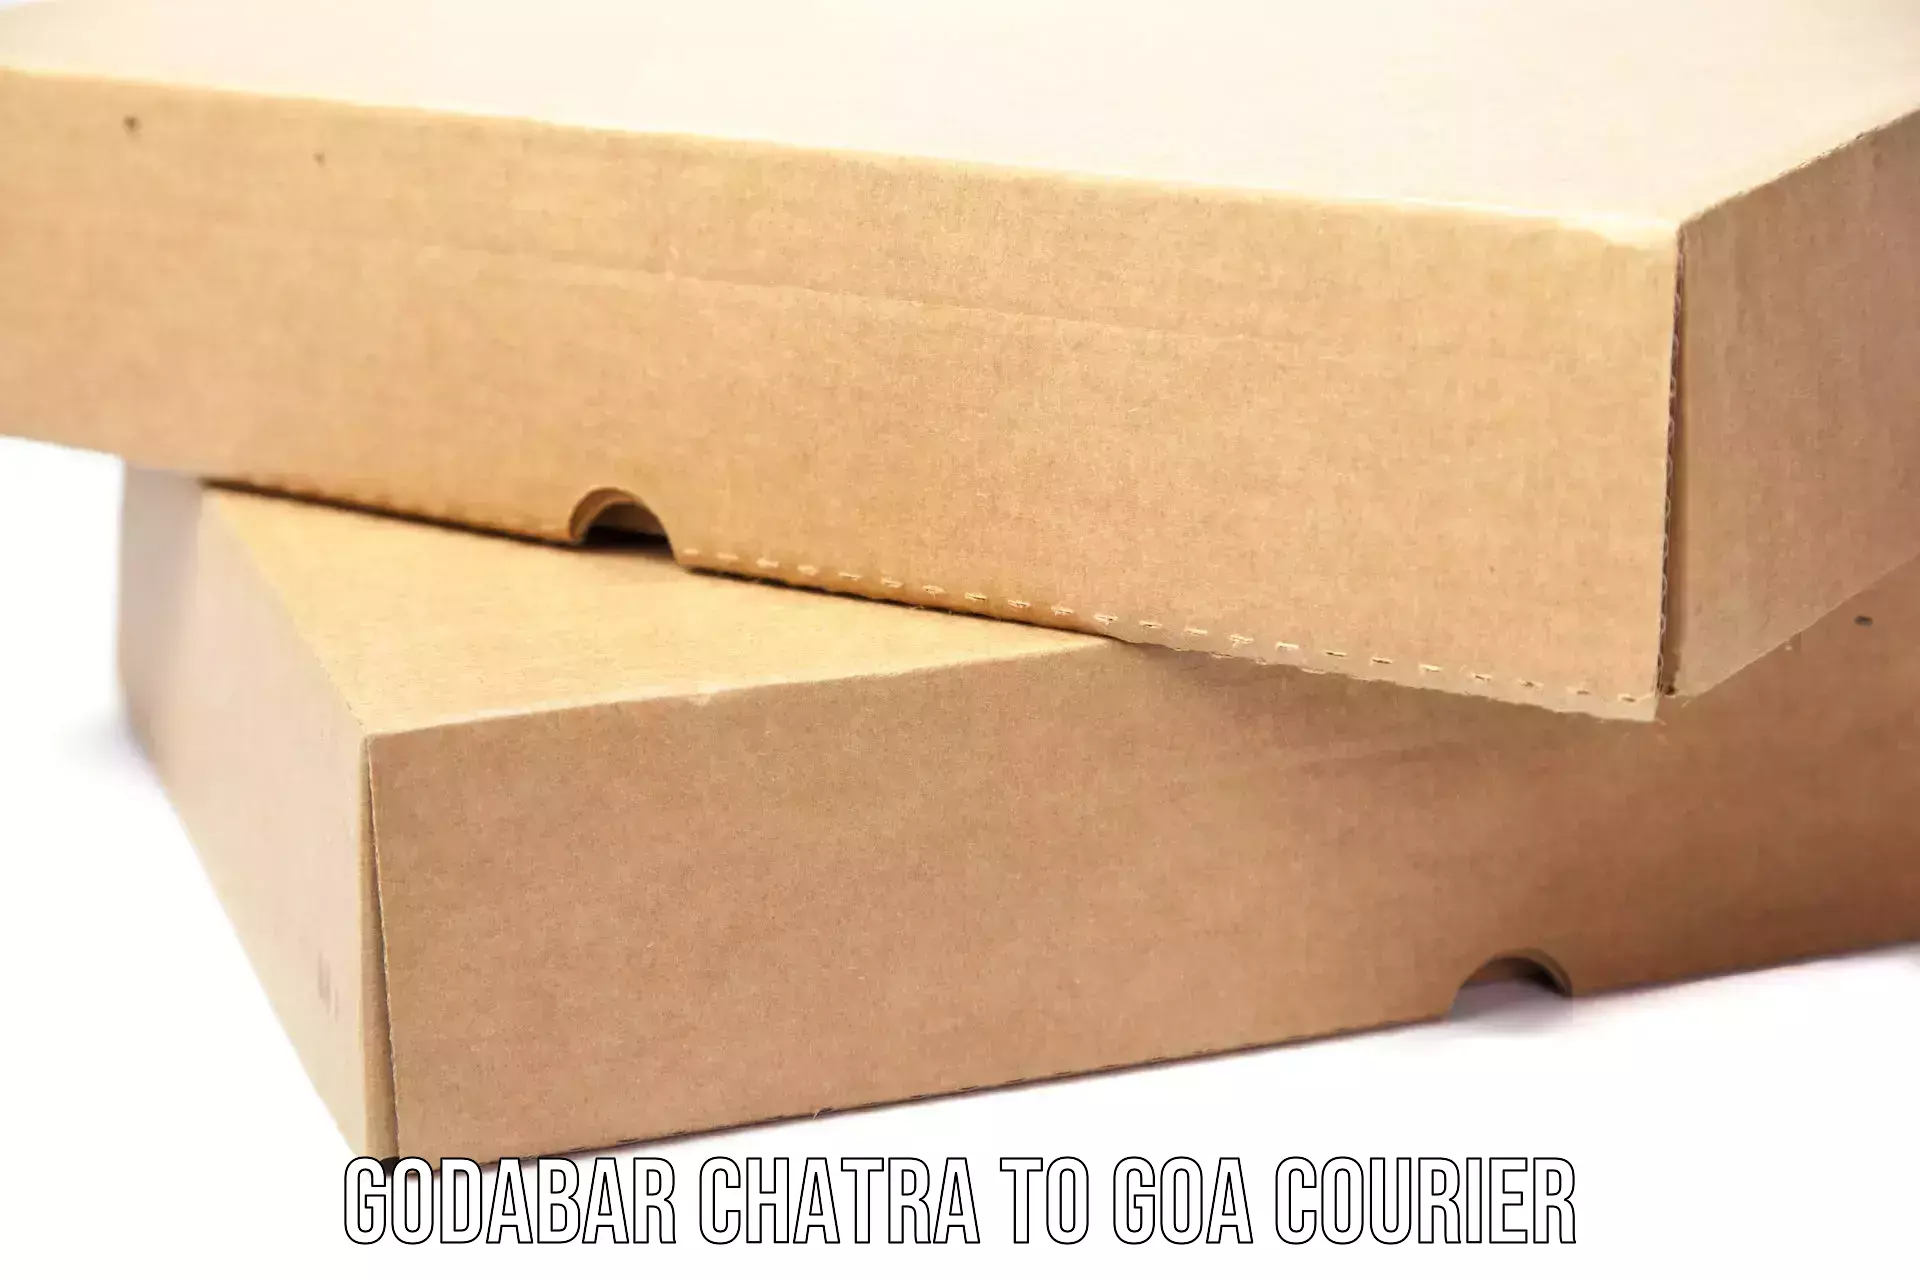 Special handling courier Godabar Chatra to Goa